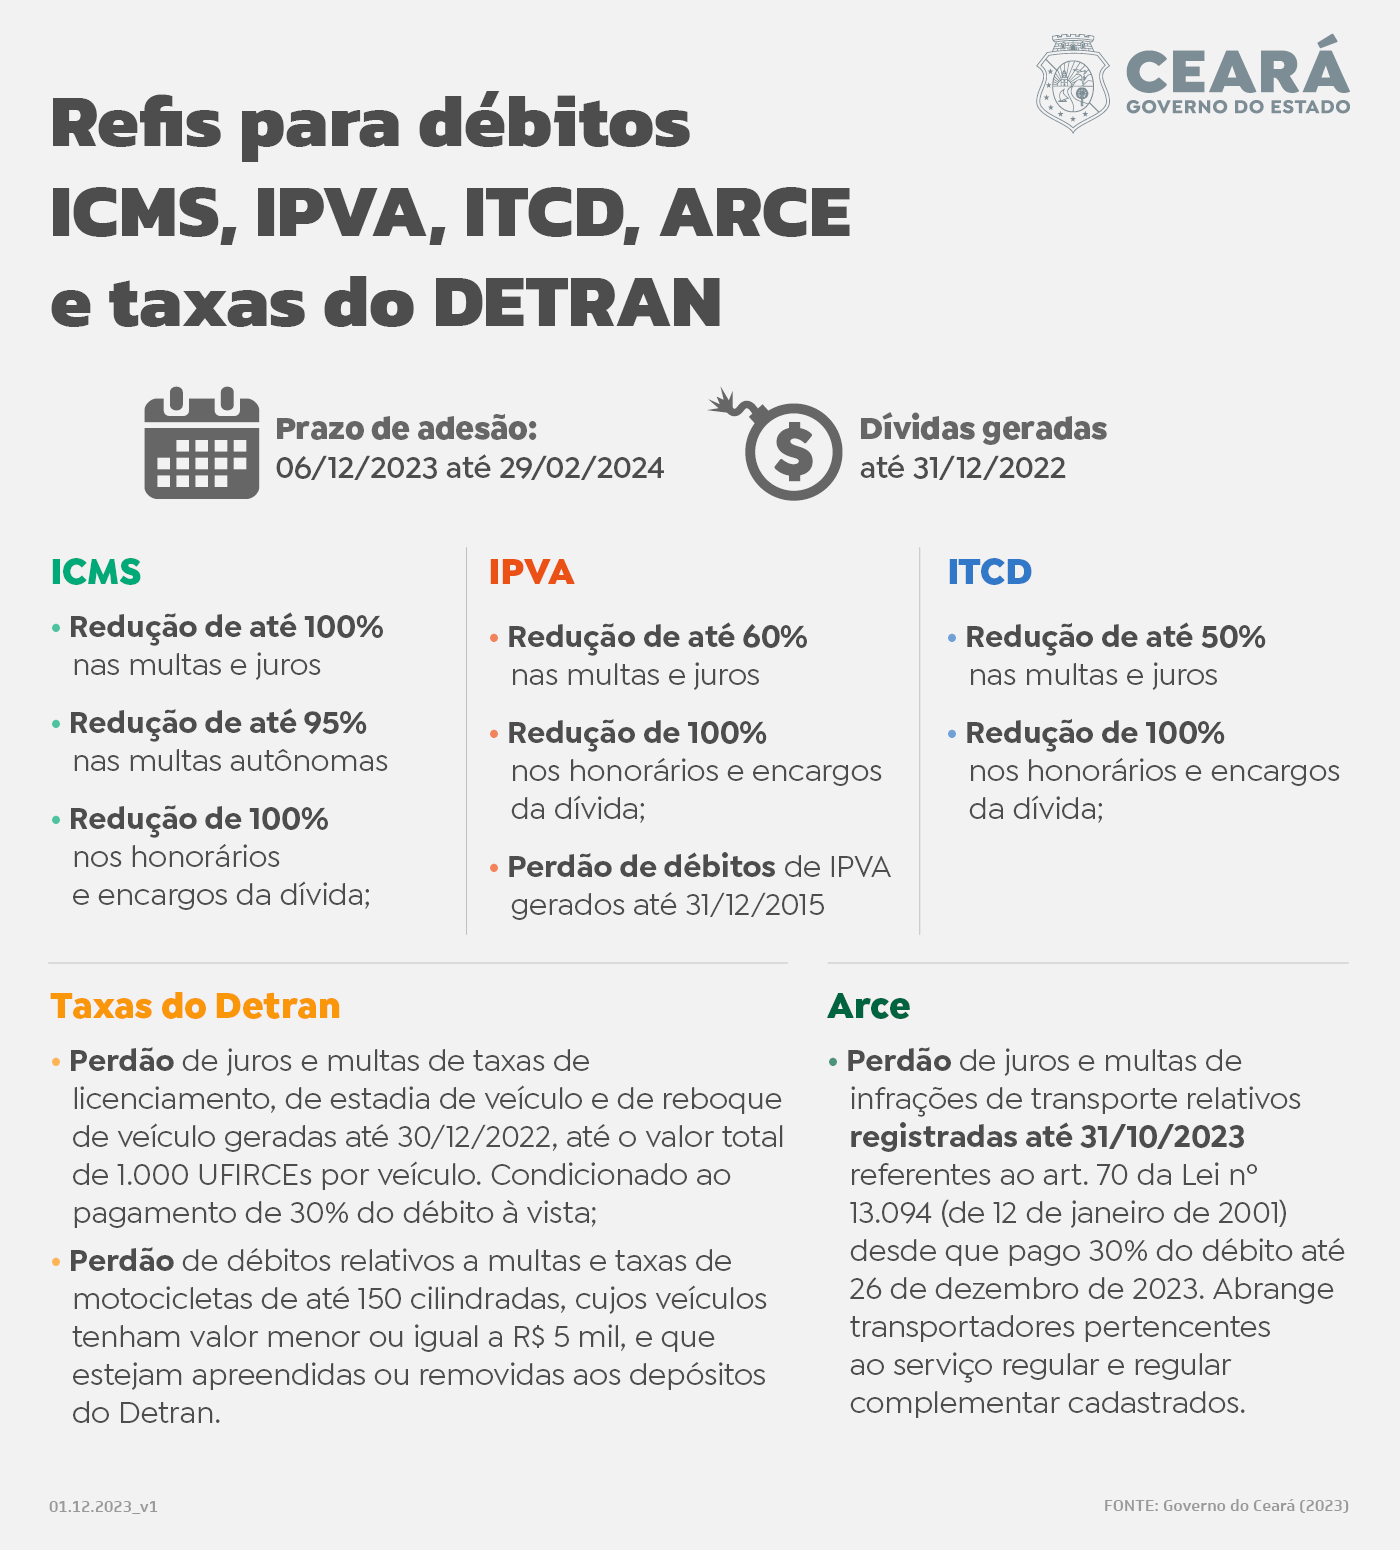 Refis Do Governo Do Ceará